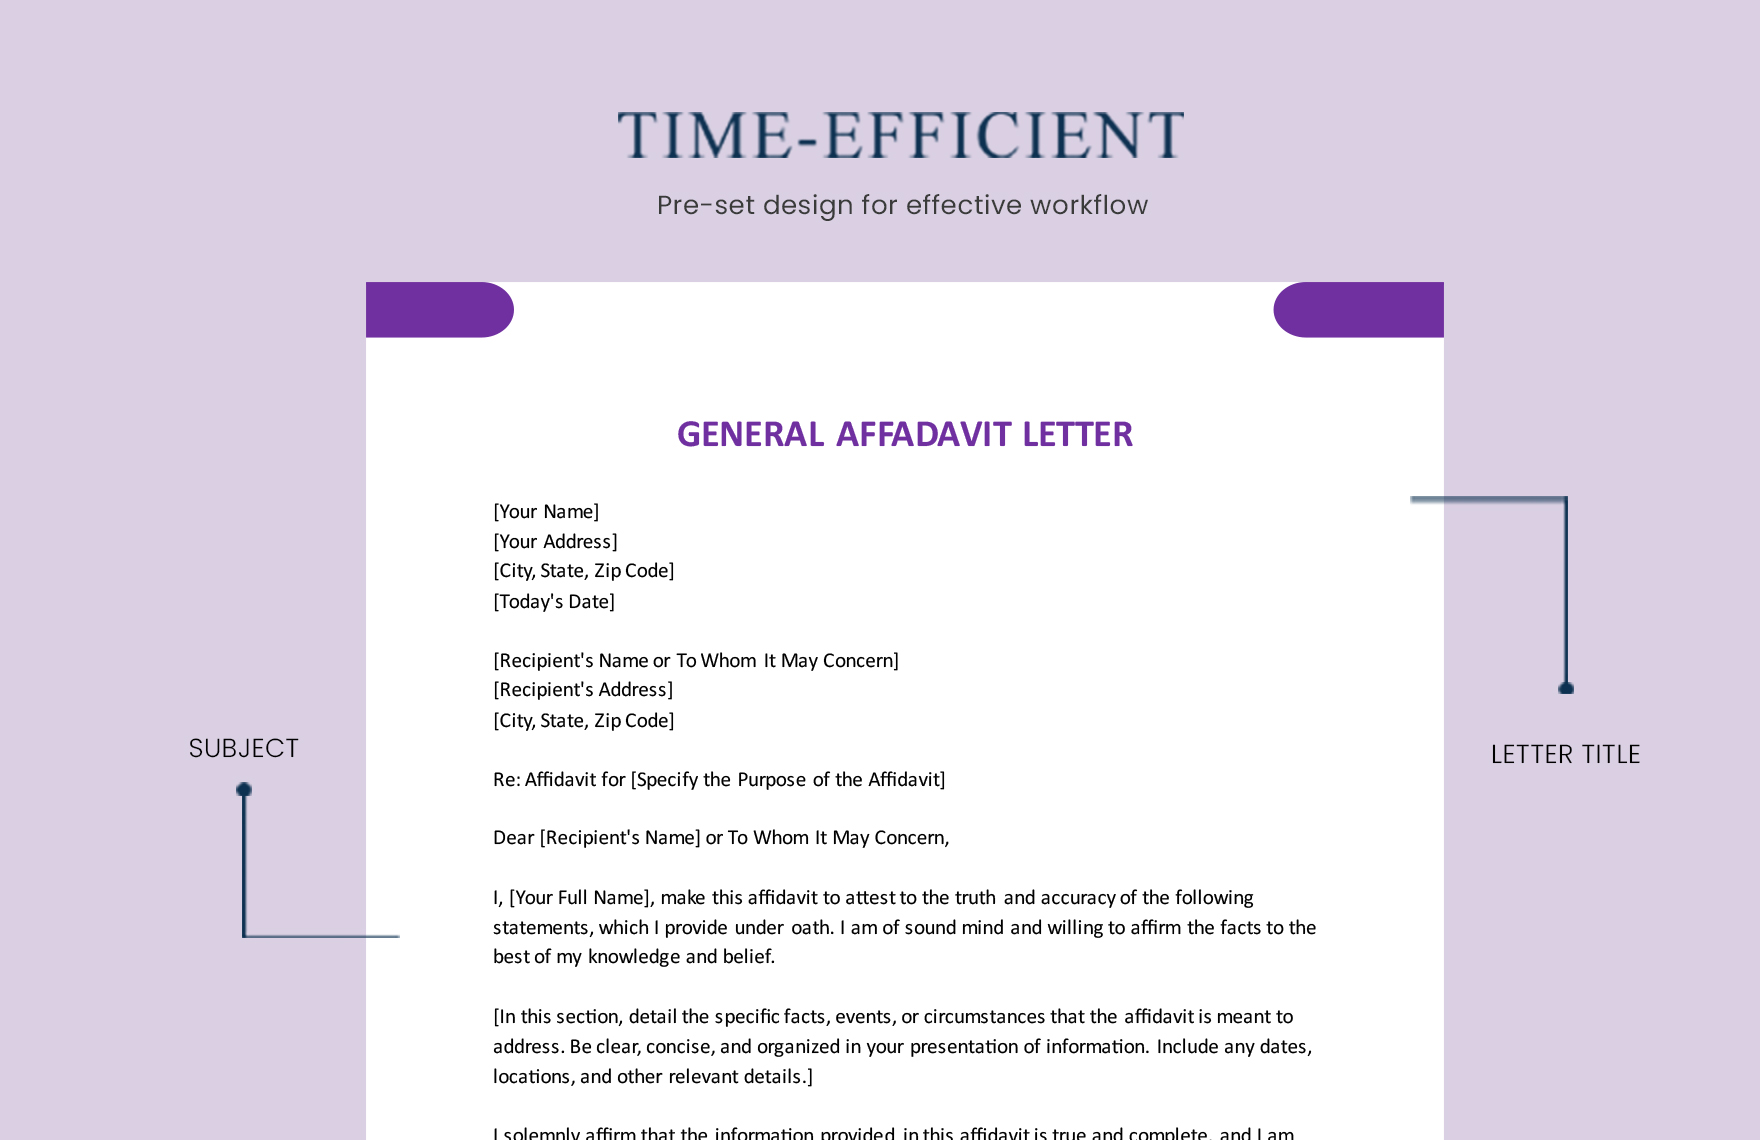 General Affidavit Letter